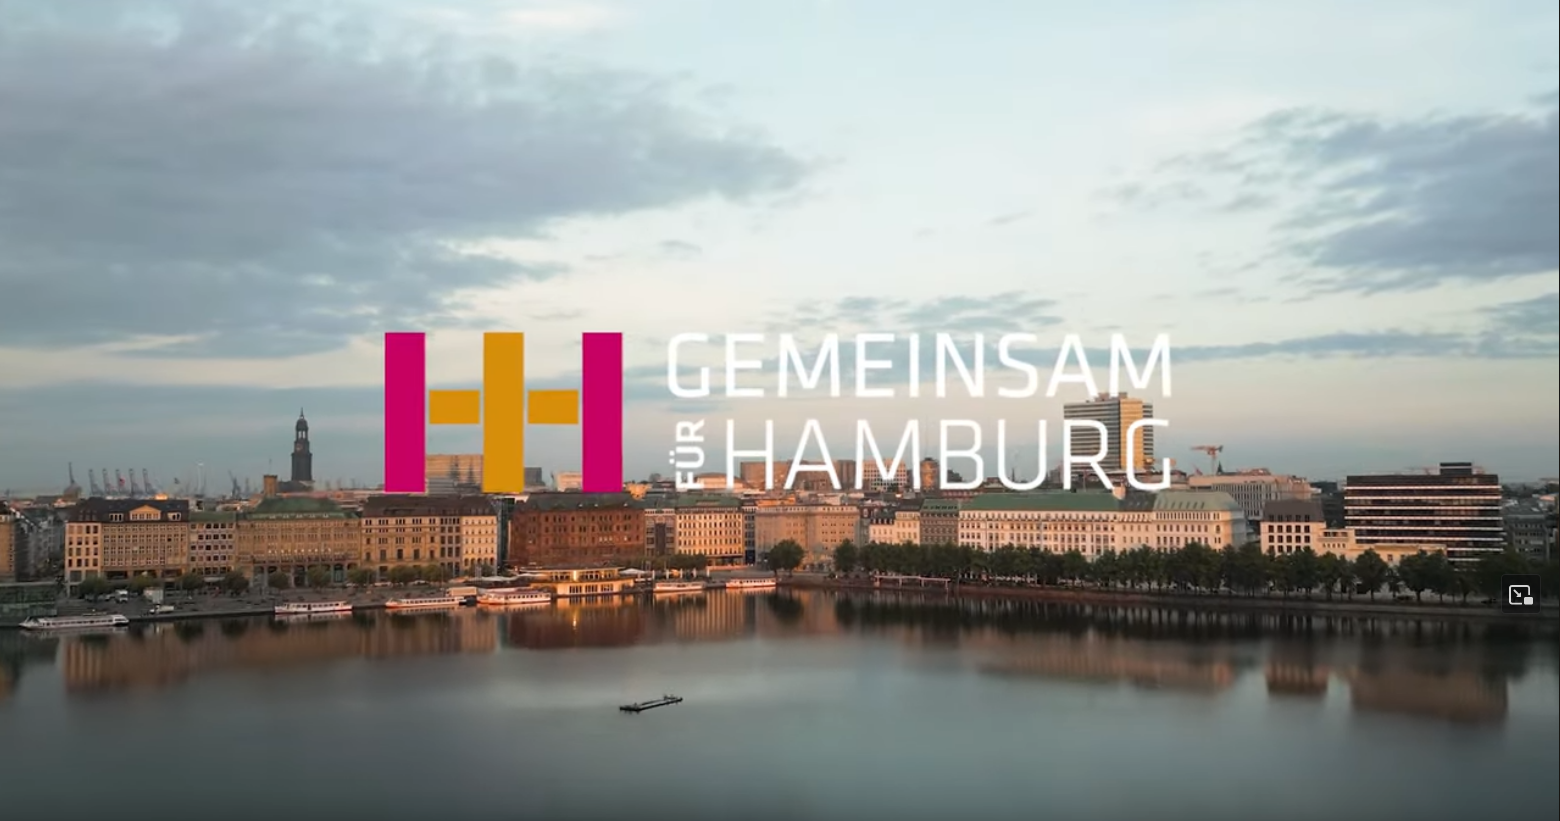 Imagefilm Gemeinsam für Hamburg